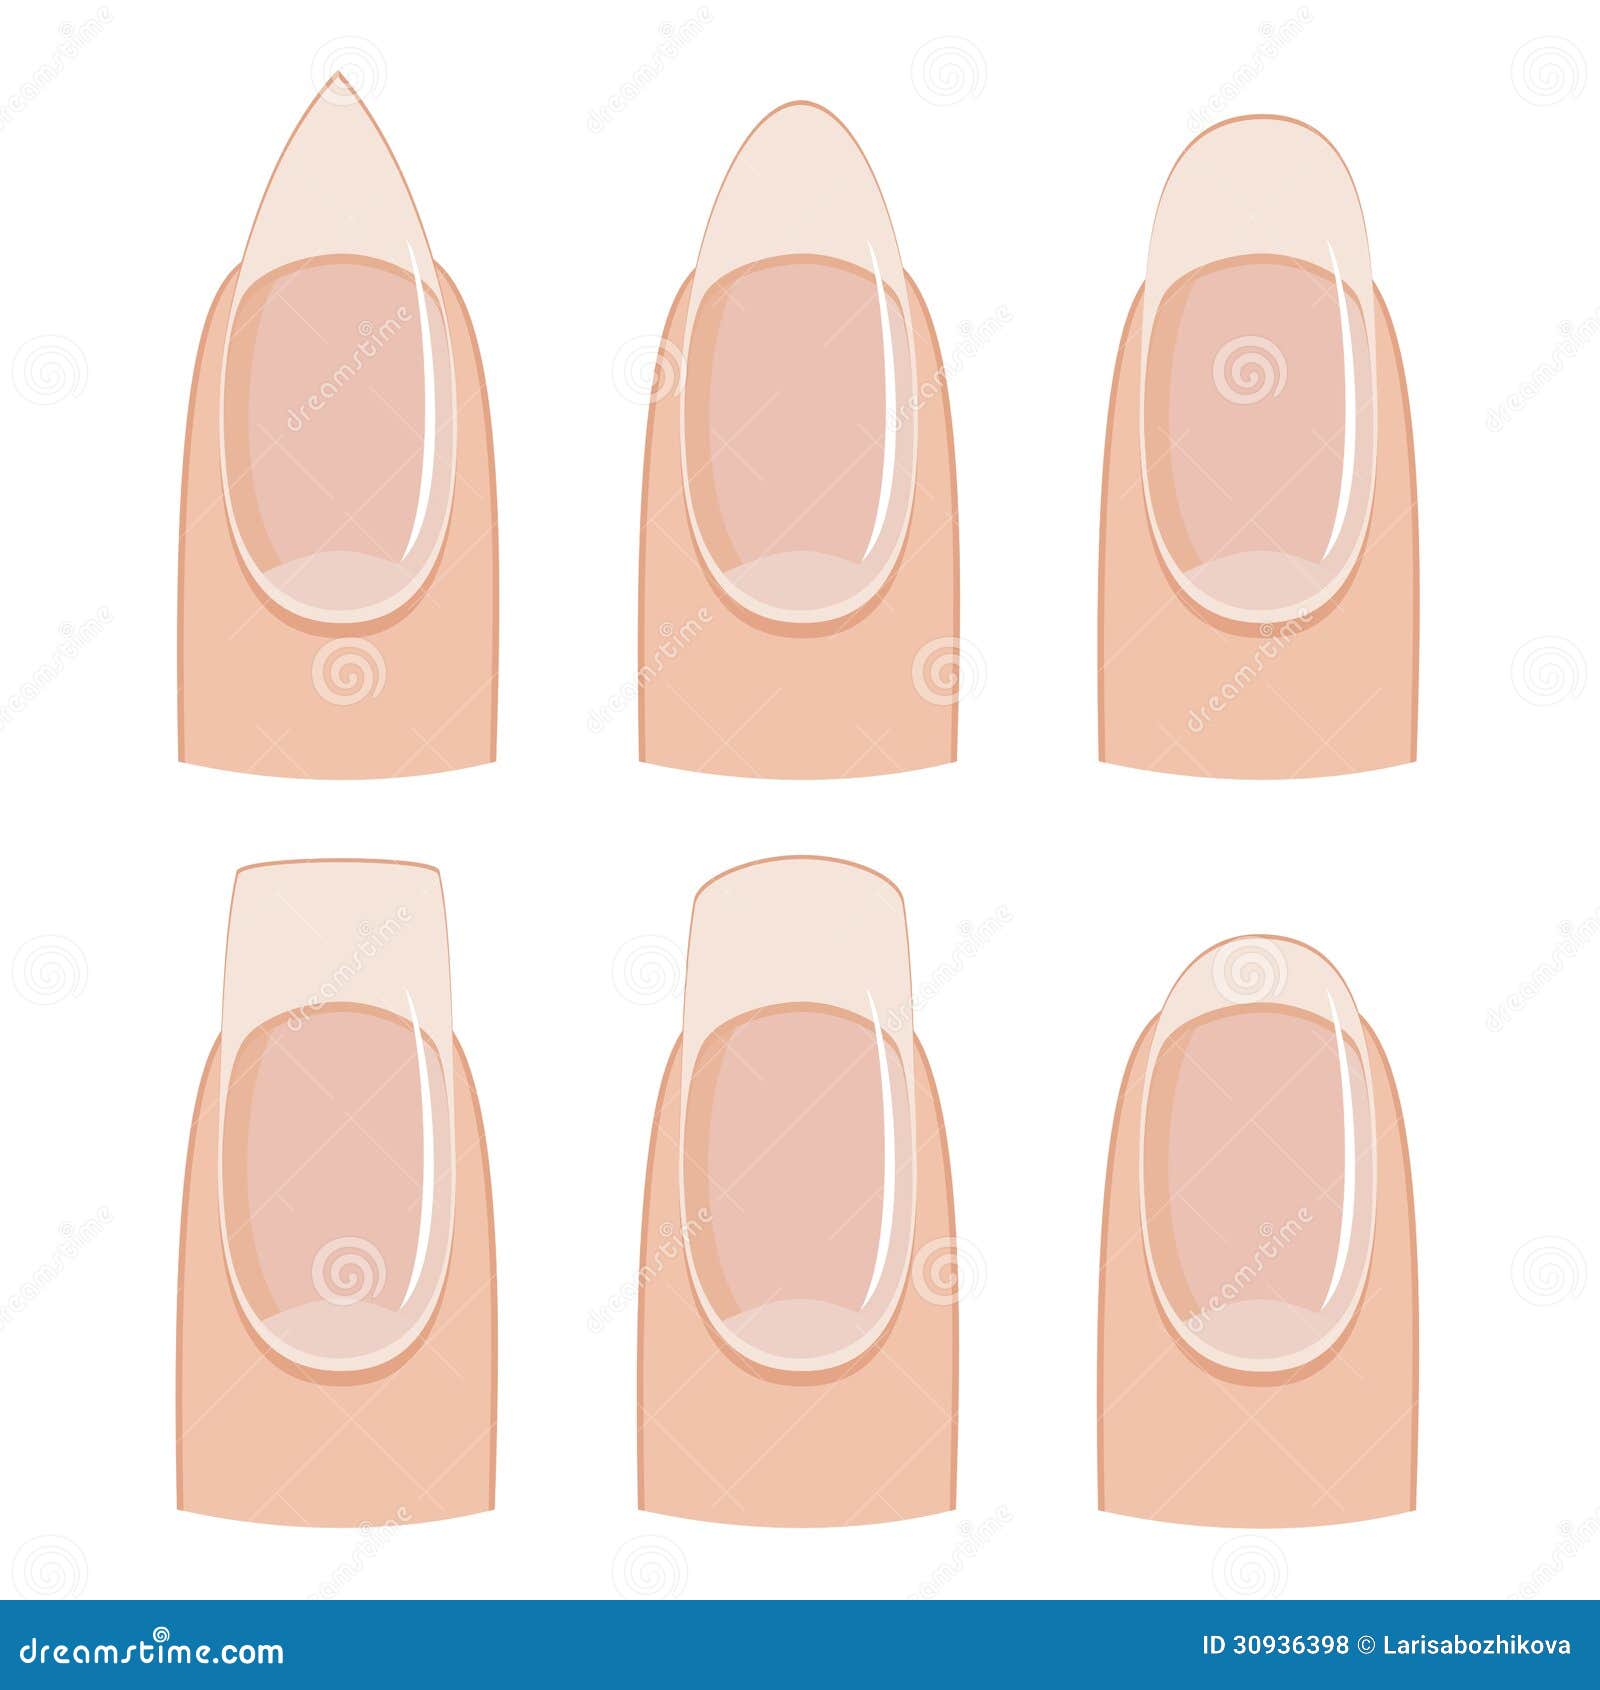 nail-shapes-manicure-shape-white-background-30936398.jpg